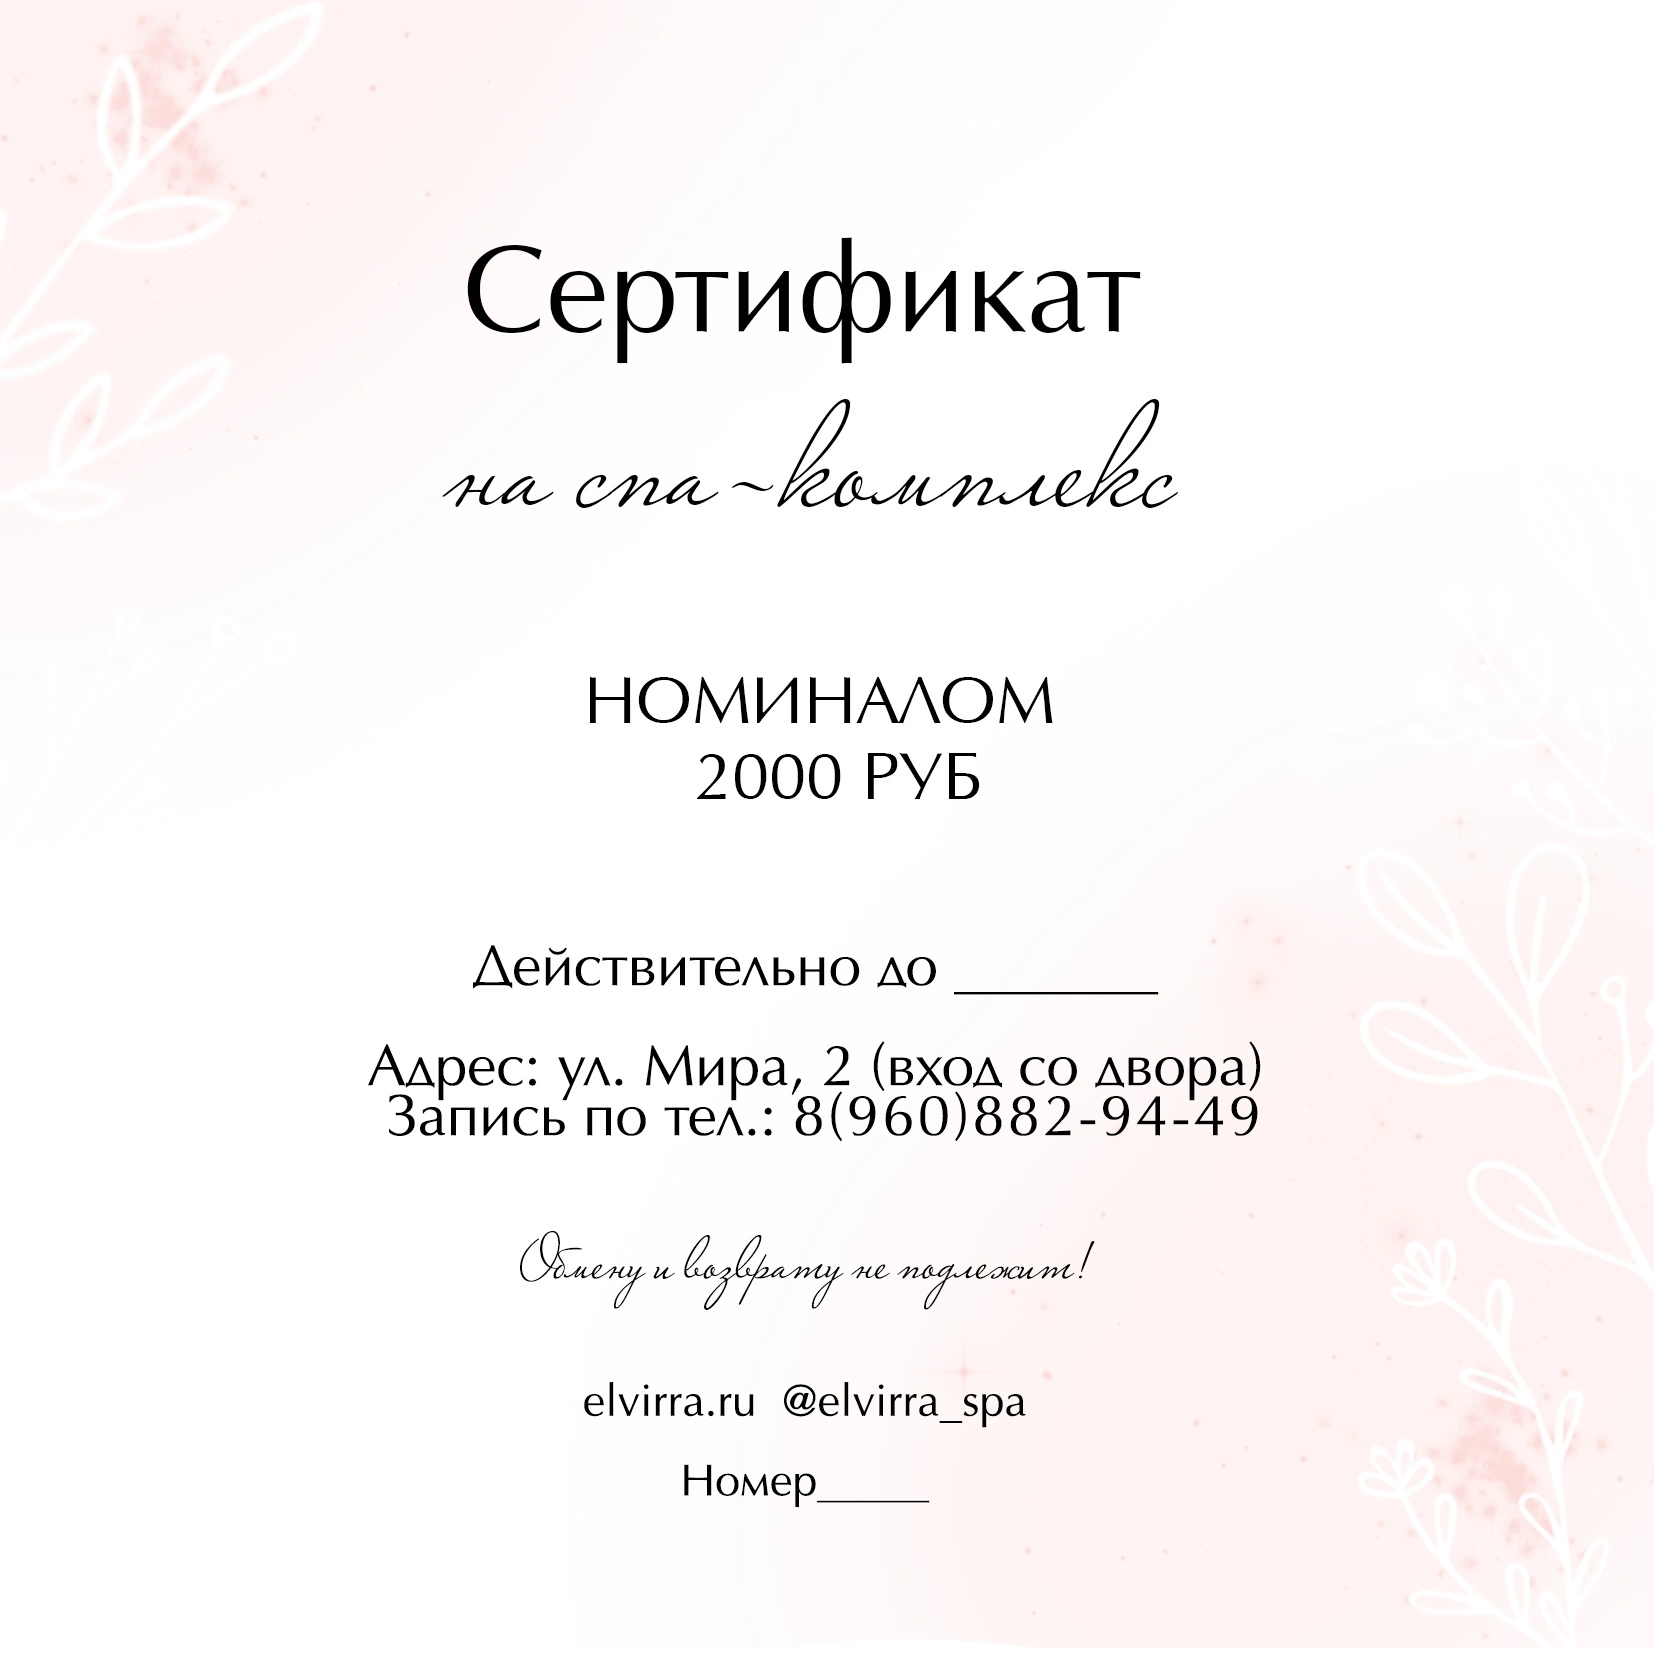 Сертификат на любую сумму от 1500 рублей